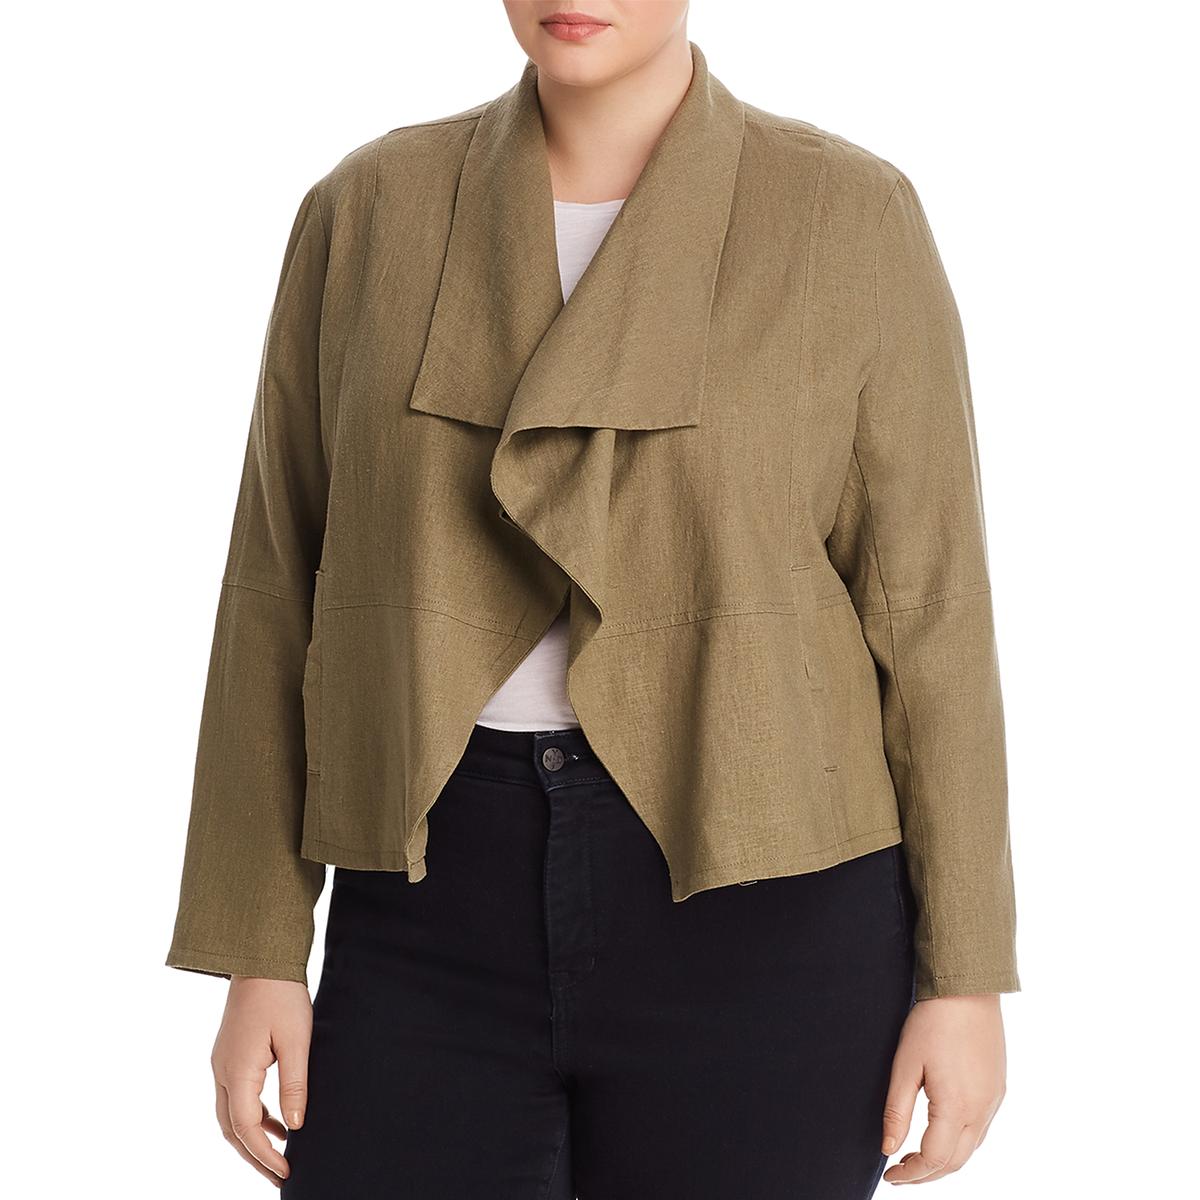 Bagatelle Womens Wide Lapel Drape Front Office Wear Jacket Blazer Plus BHFO 2821 